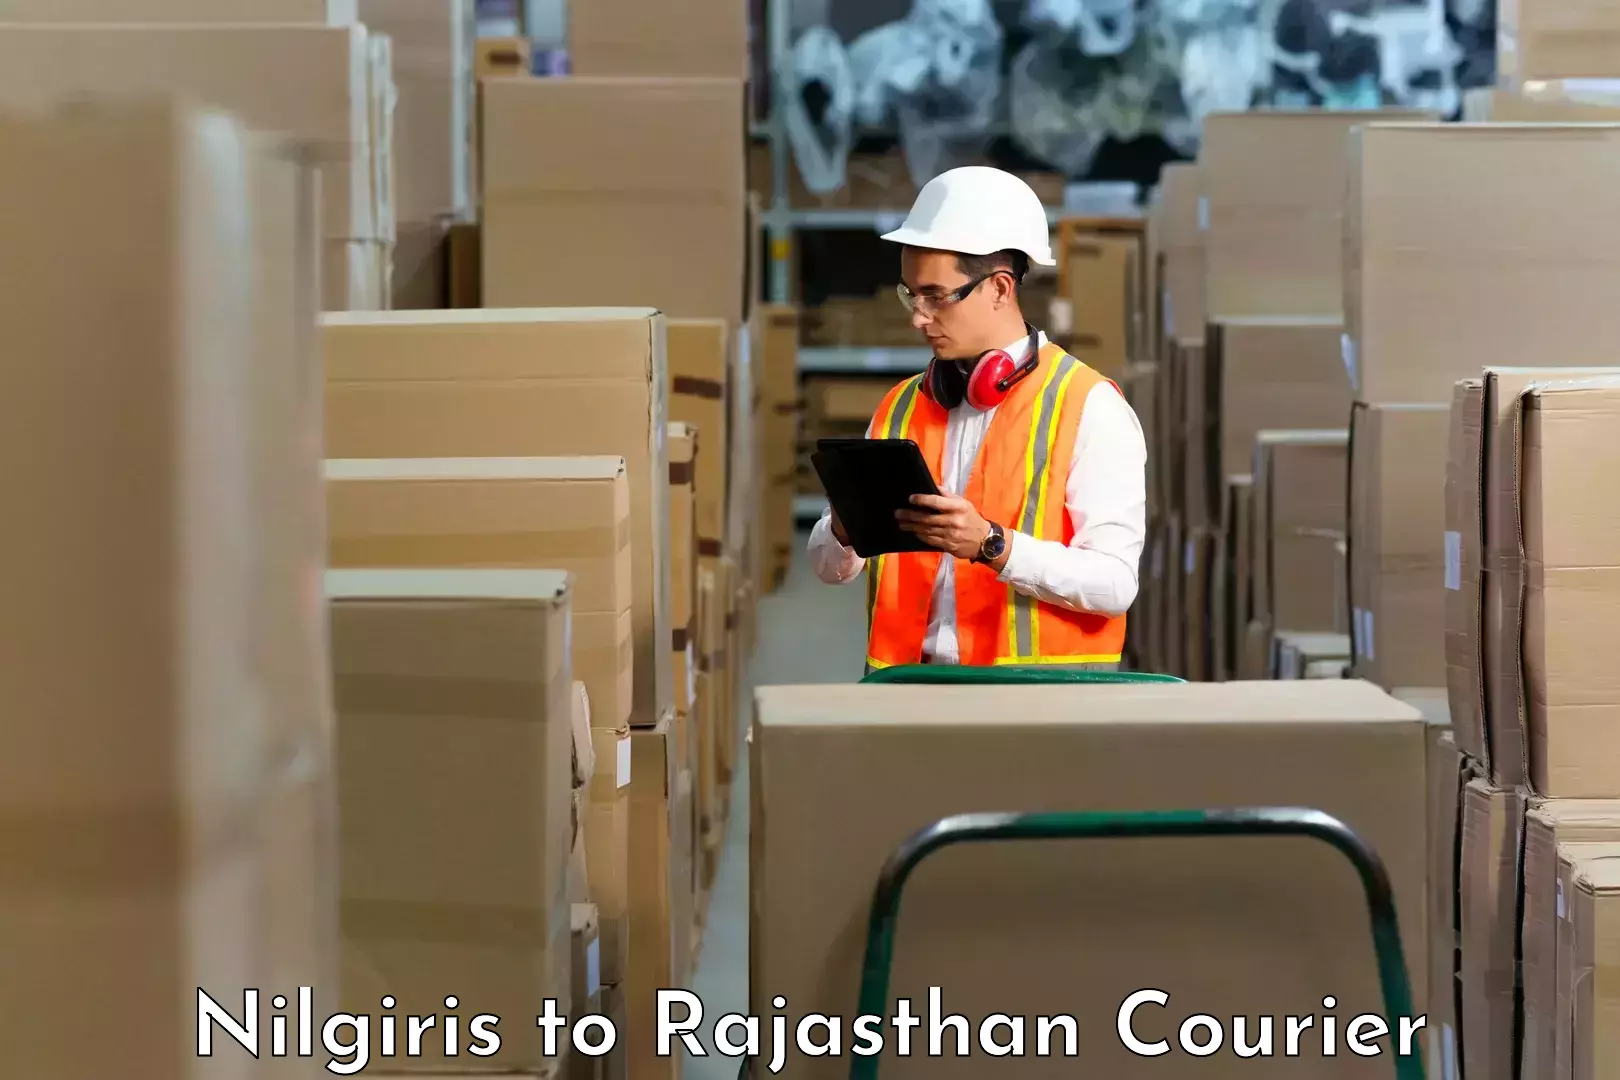 Next-generation courier services Nilgiris to Degana